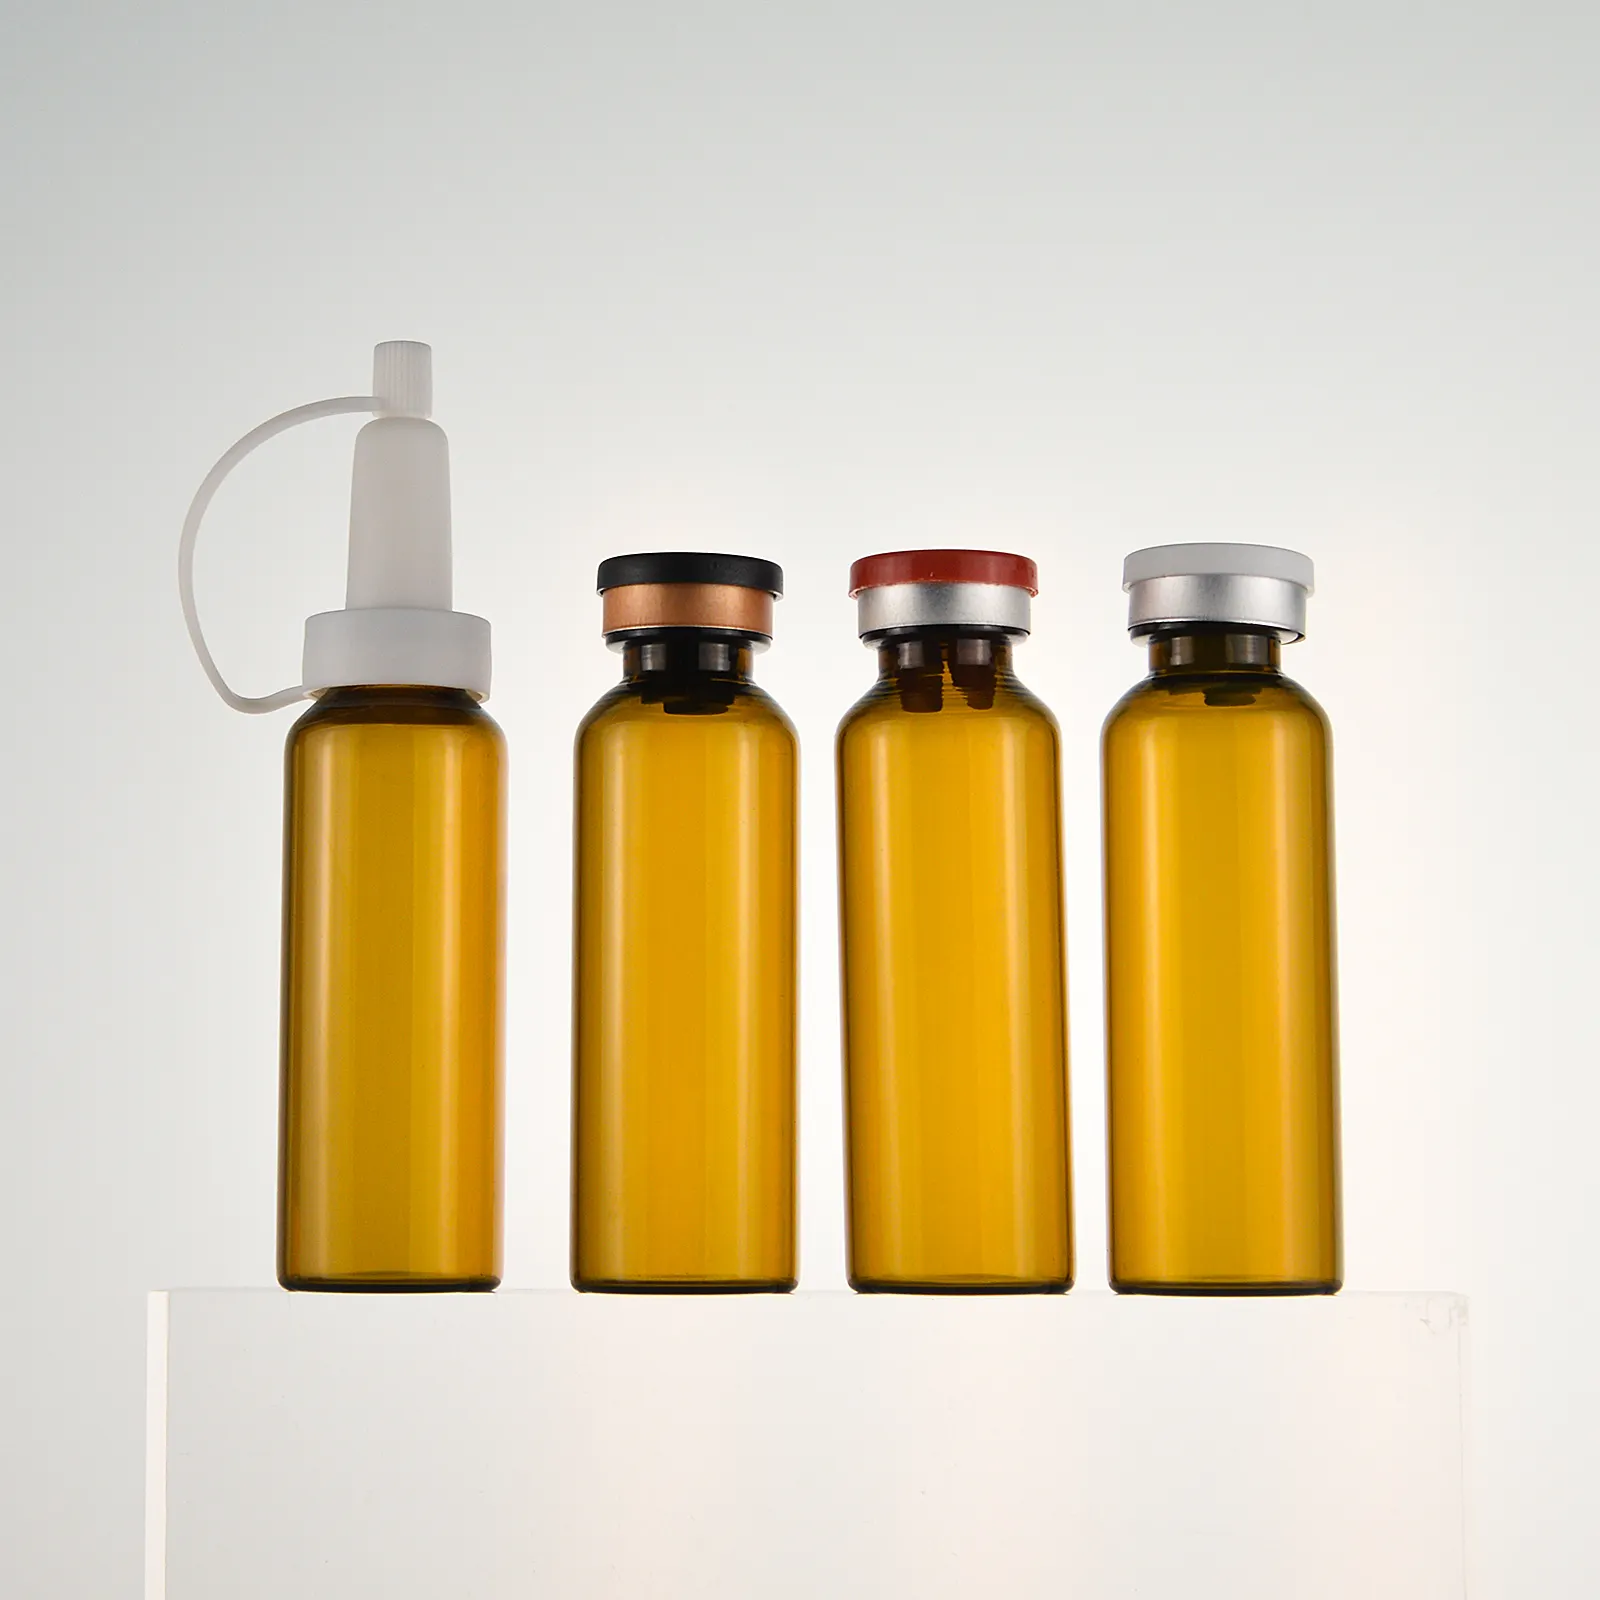 Großhandel Clear Amber Penicillin Aluminium kappen Tube Pharmazeut ische Glas fläschchen Flaschen mit Butyl kautschuks topfen